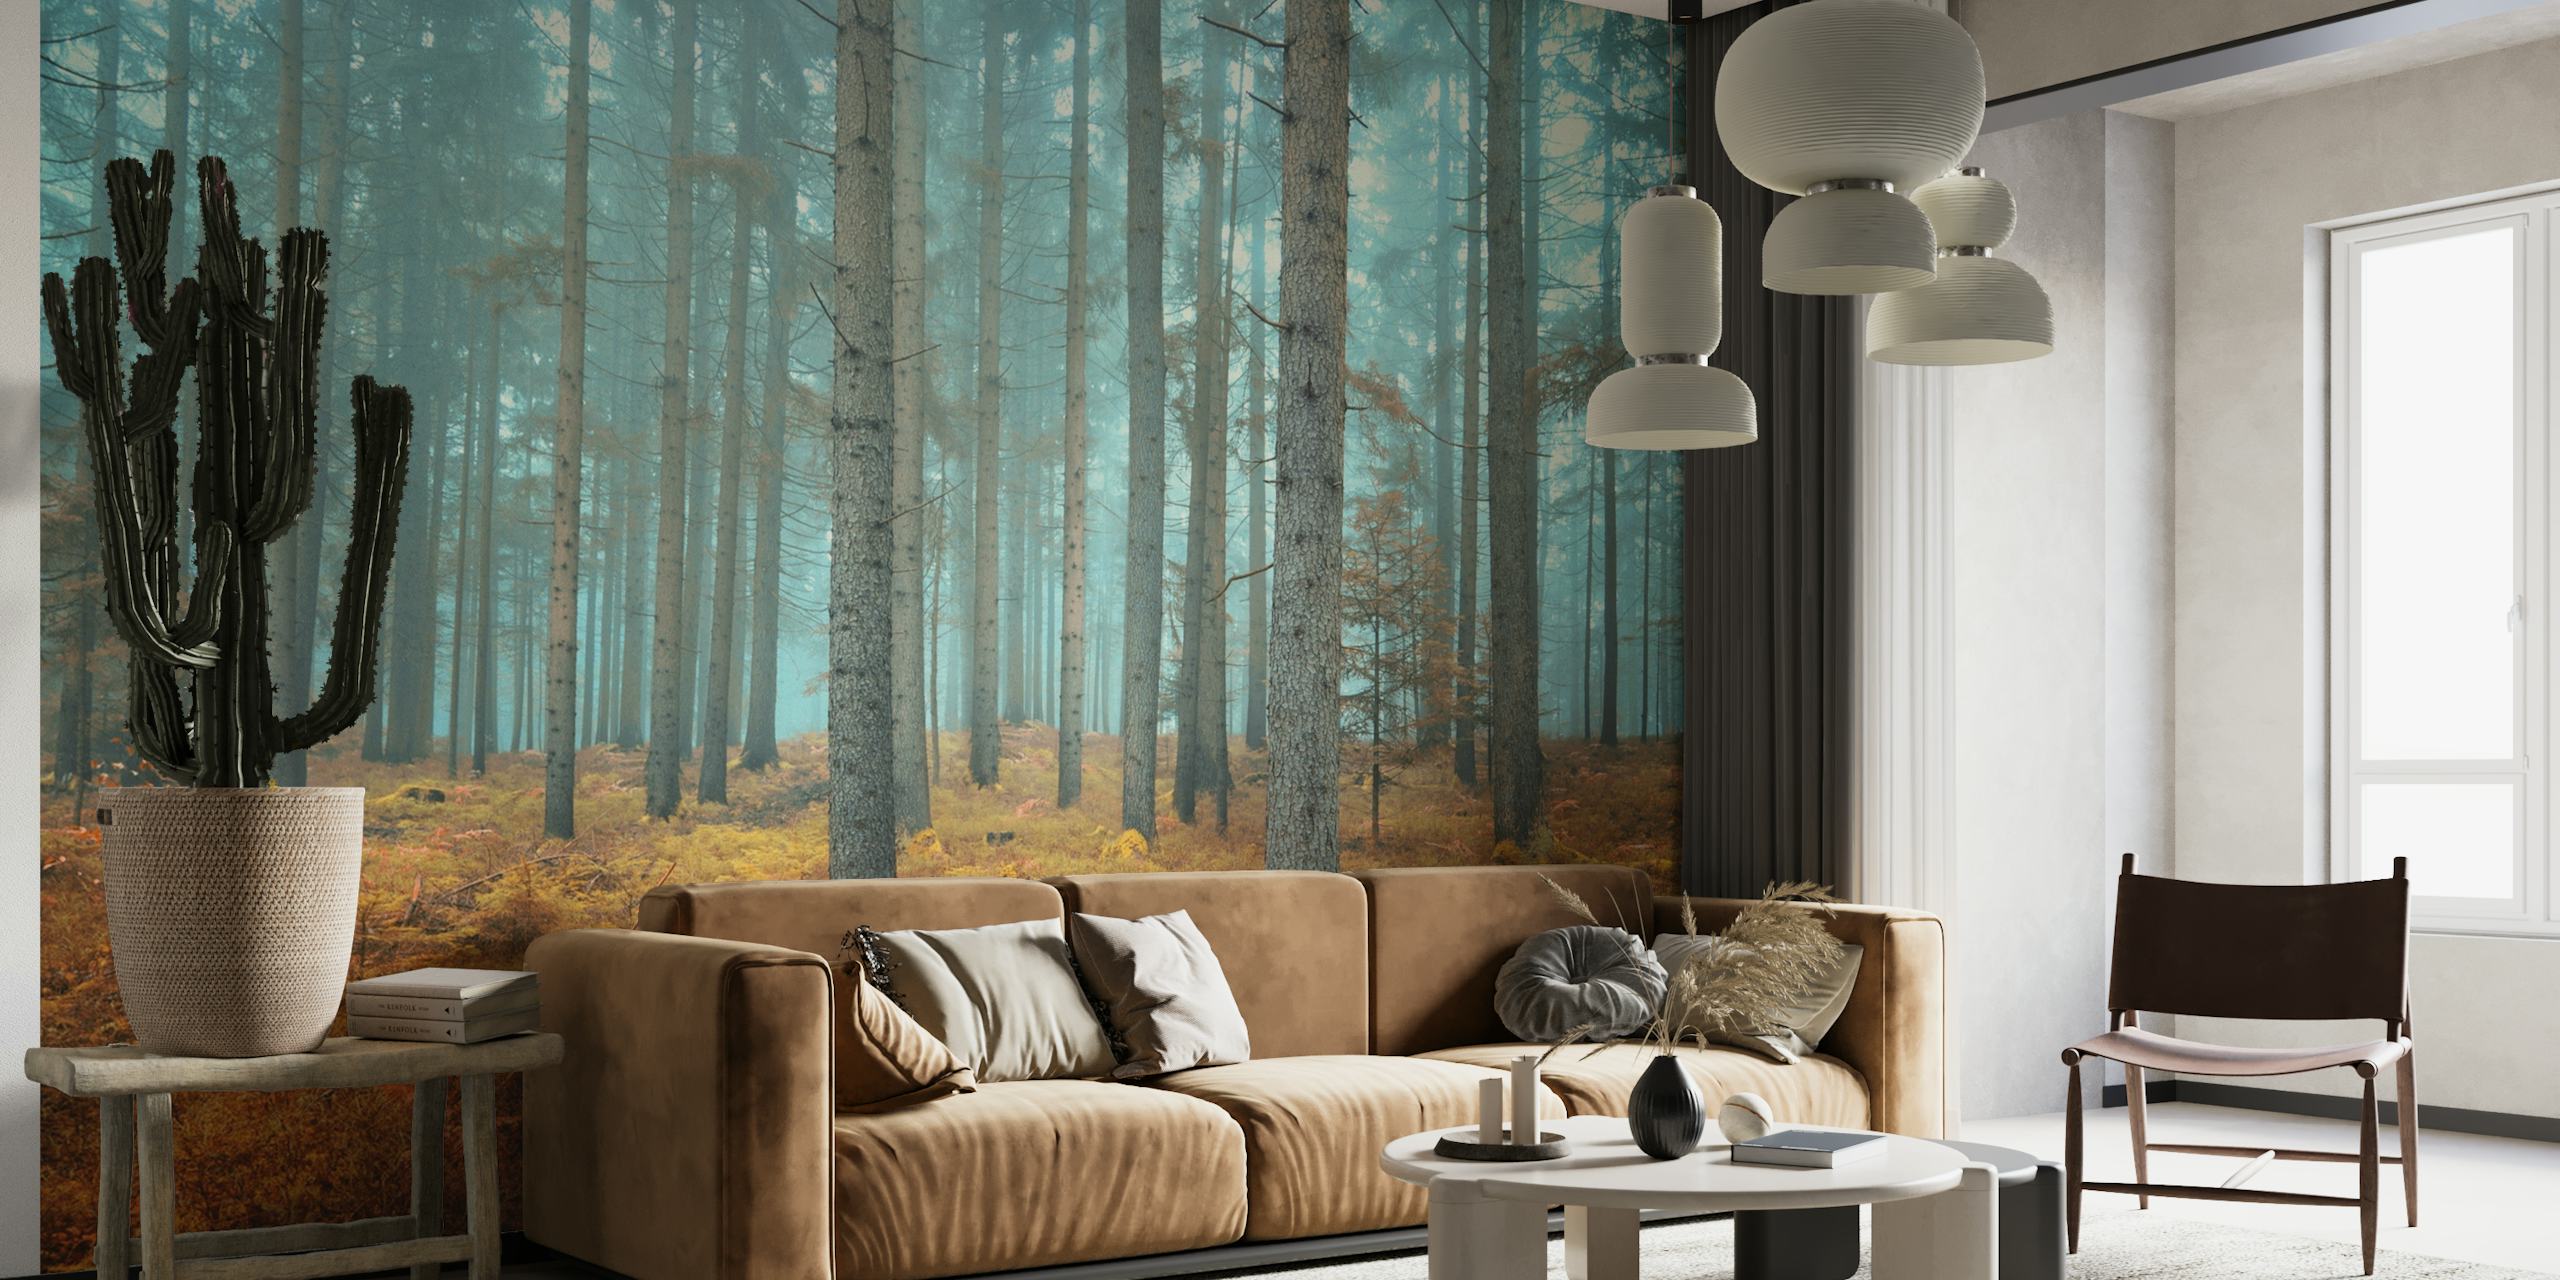 Dreamy forest papel pintado